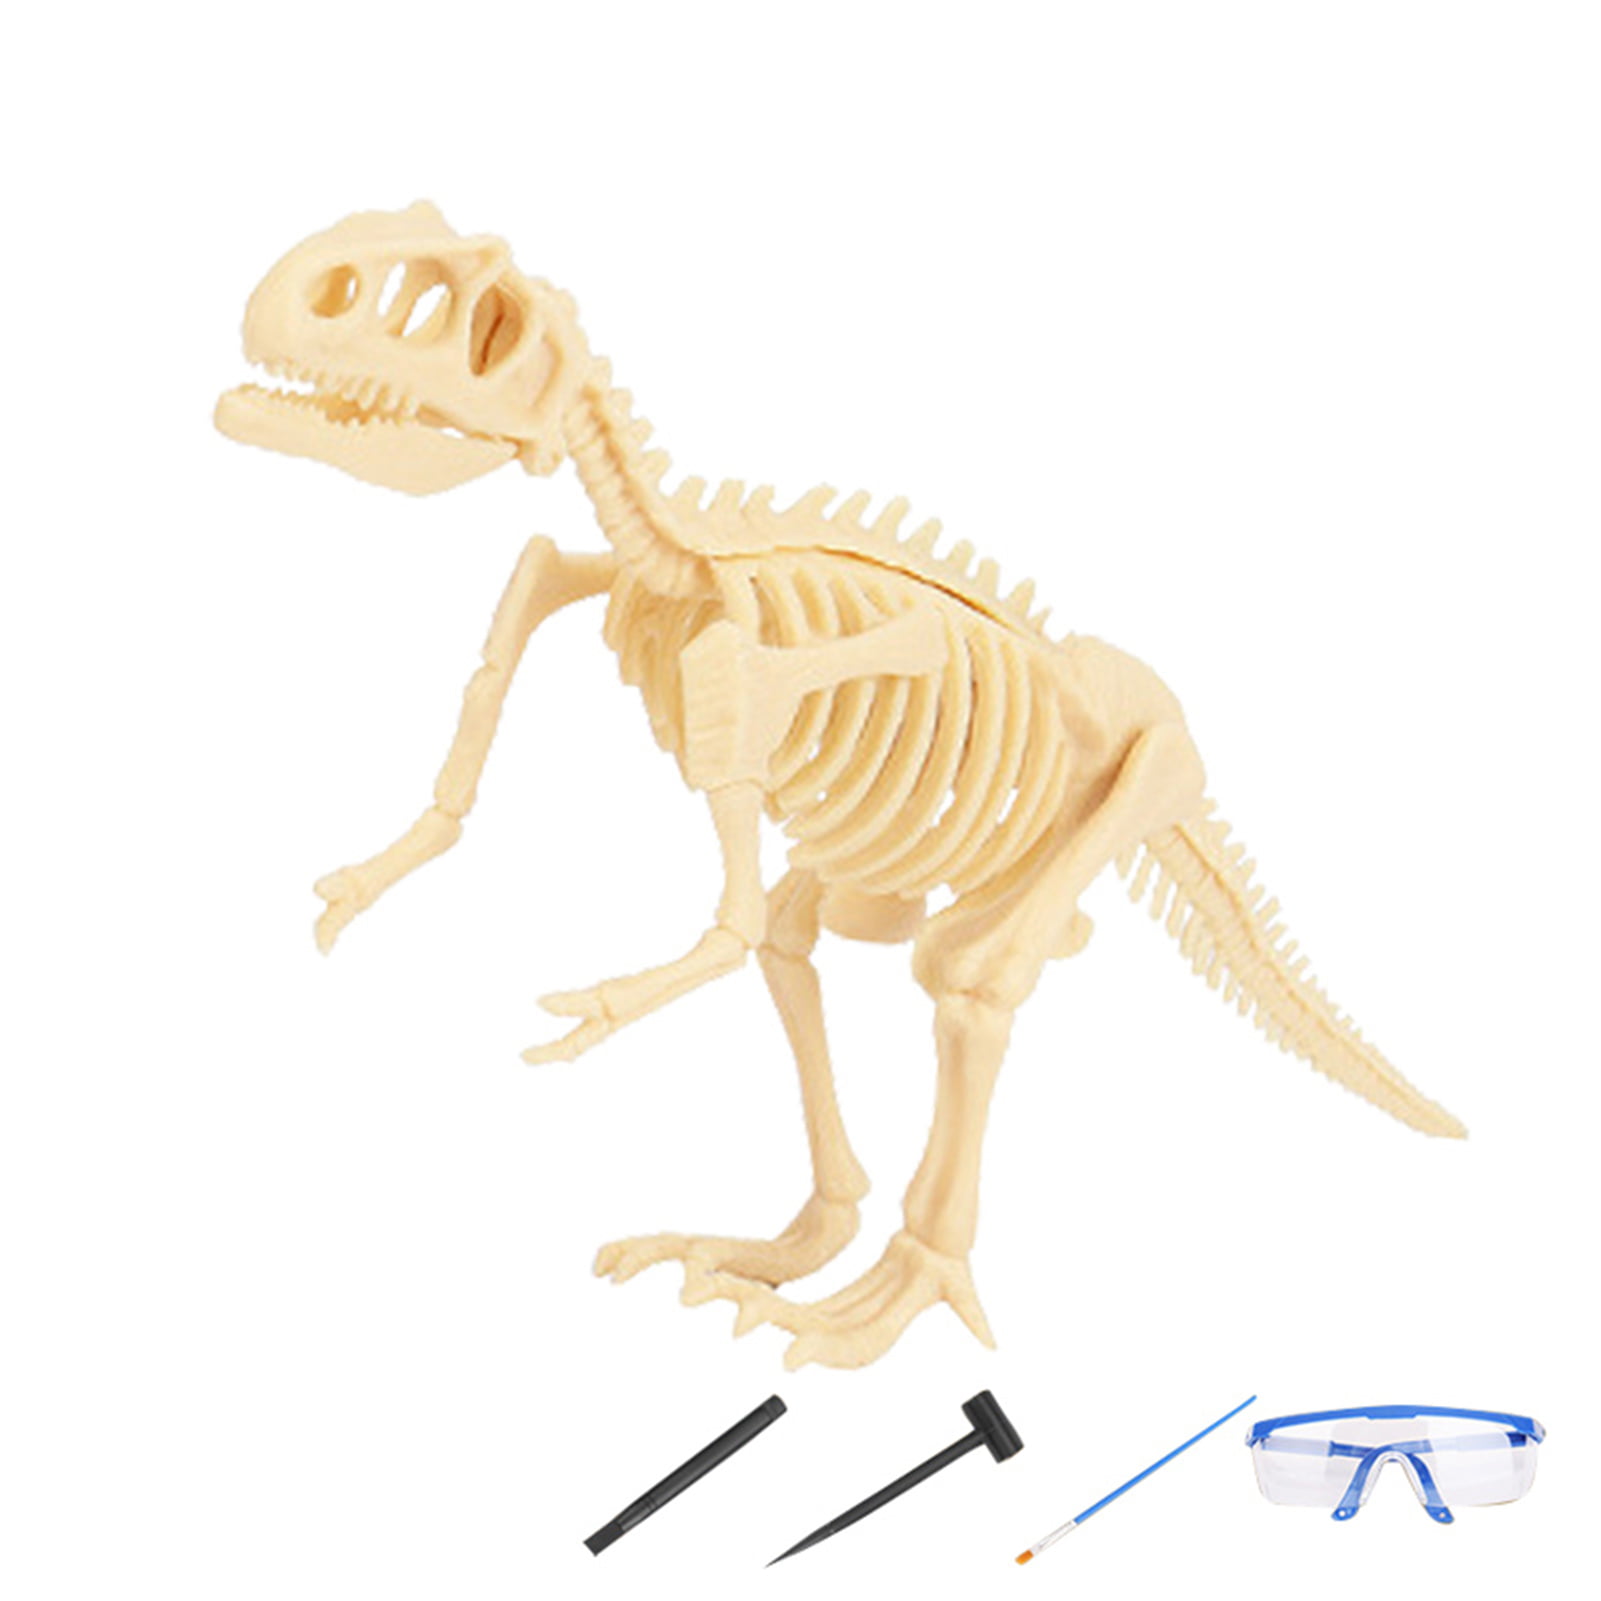 Novelty Dinosaur Excavation Kit Dig up Fossils Skeleton Model Kids Science Toy 